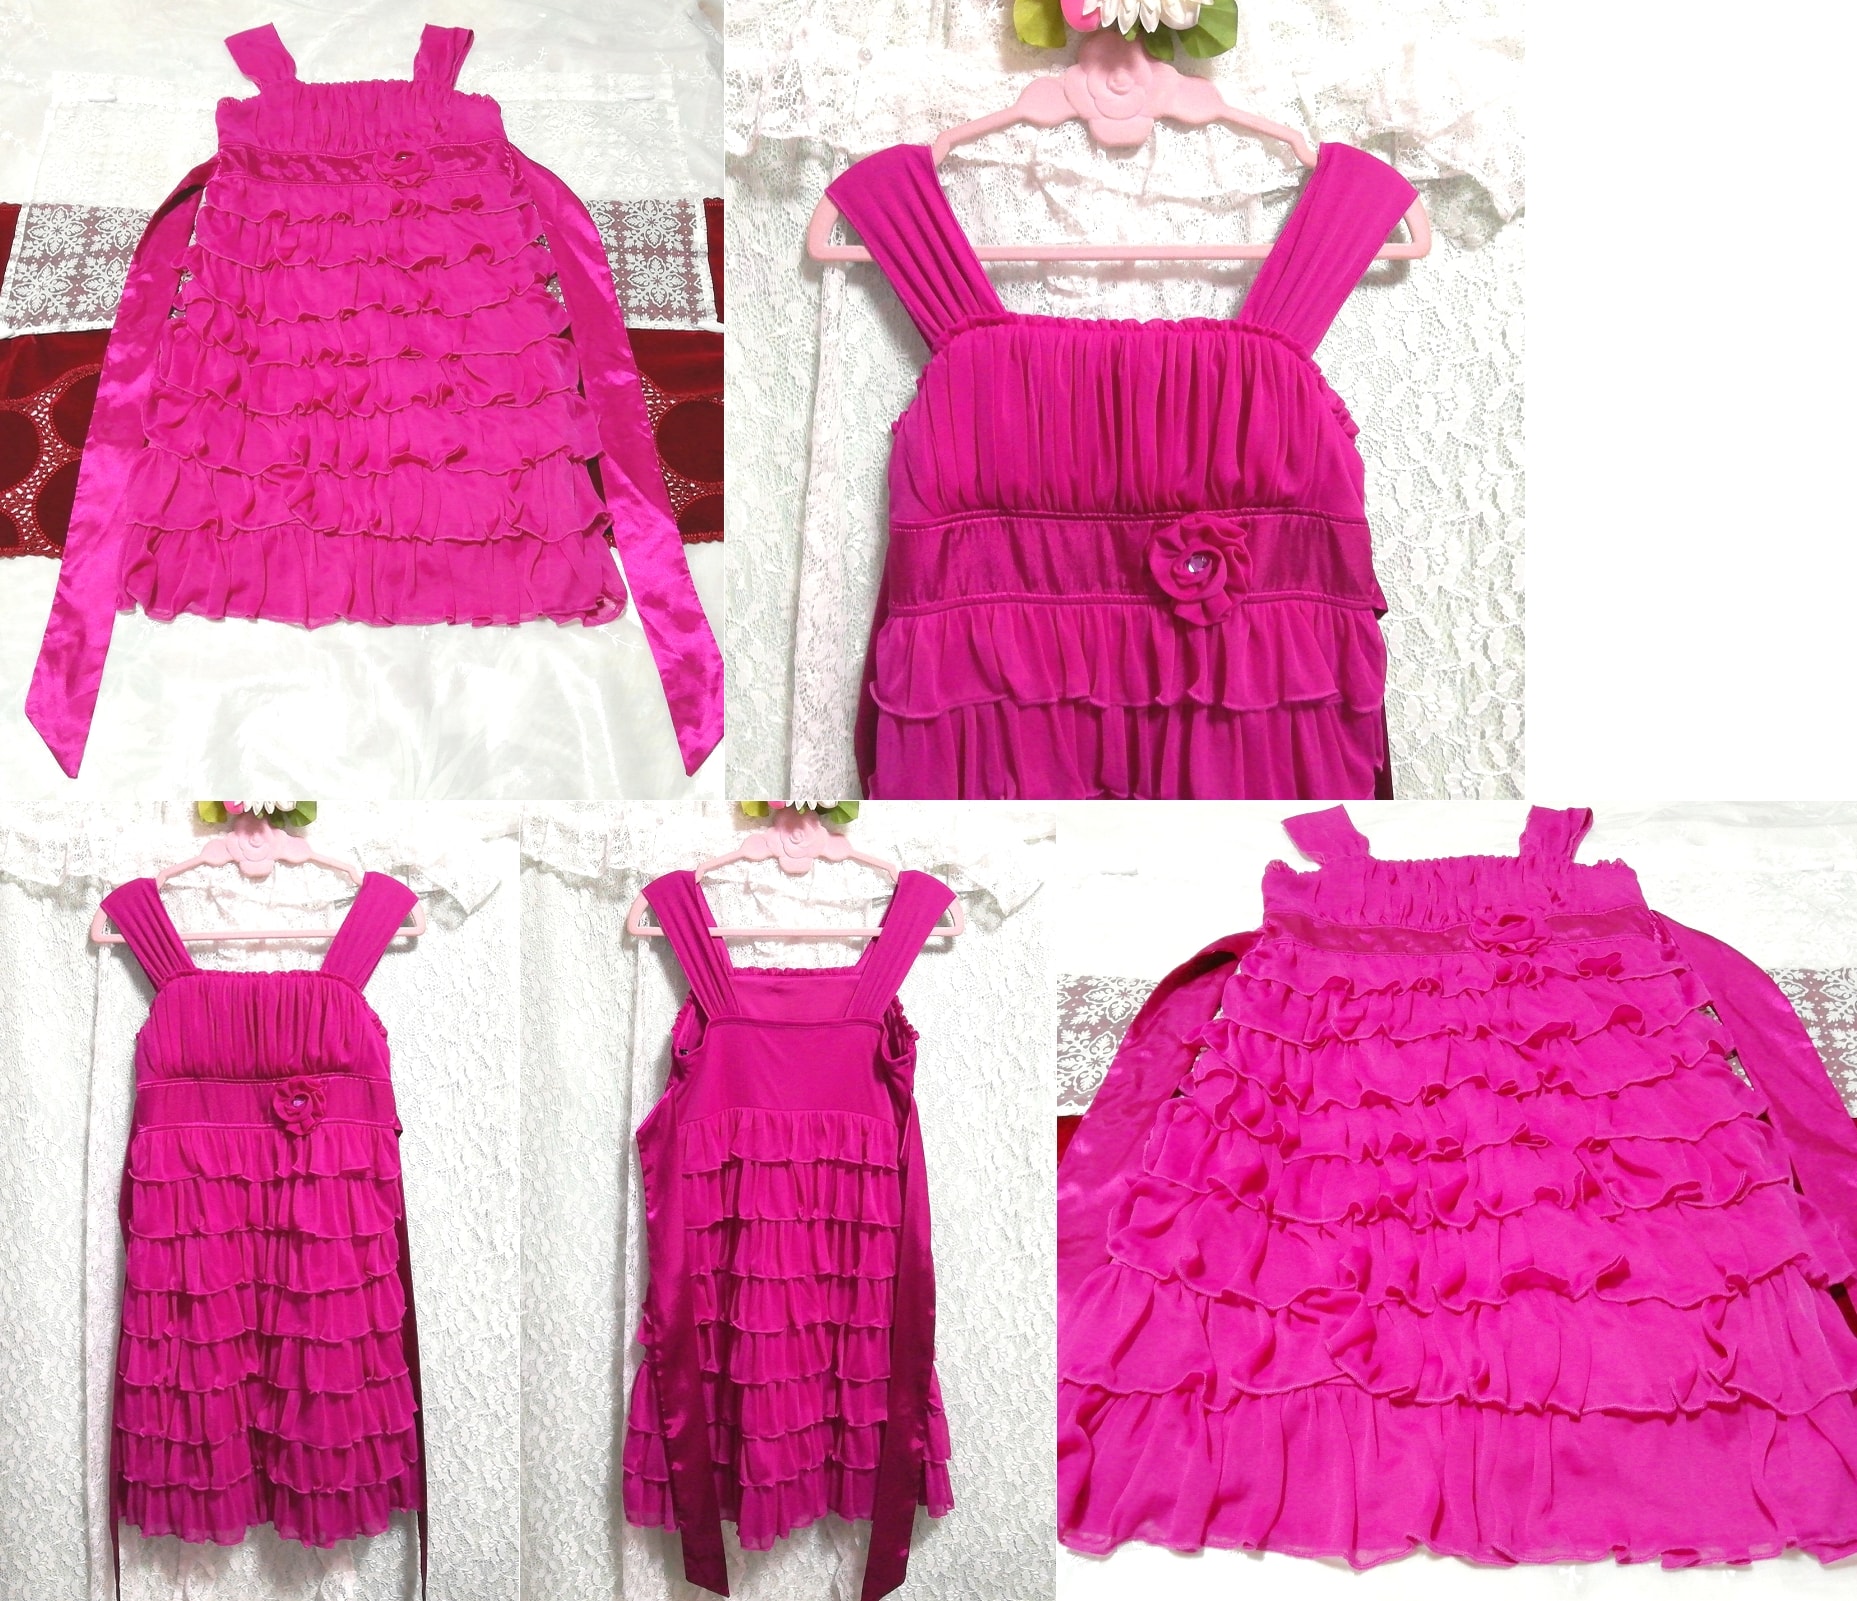 마젠타 핑크 러플 새틴 리본 네글리제 나이트가운 민소매 드레스, 패션, 숙녀 패션, 잠옷, 잠옷